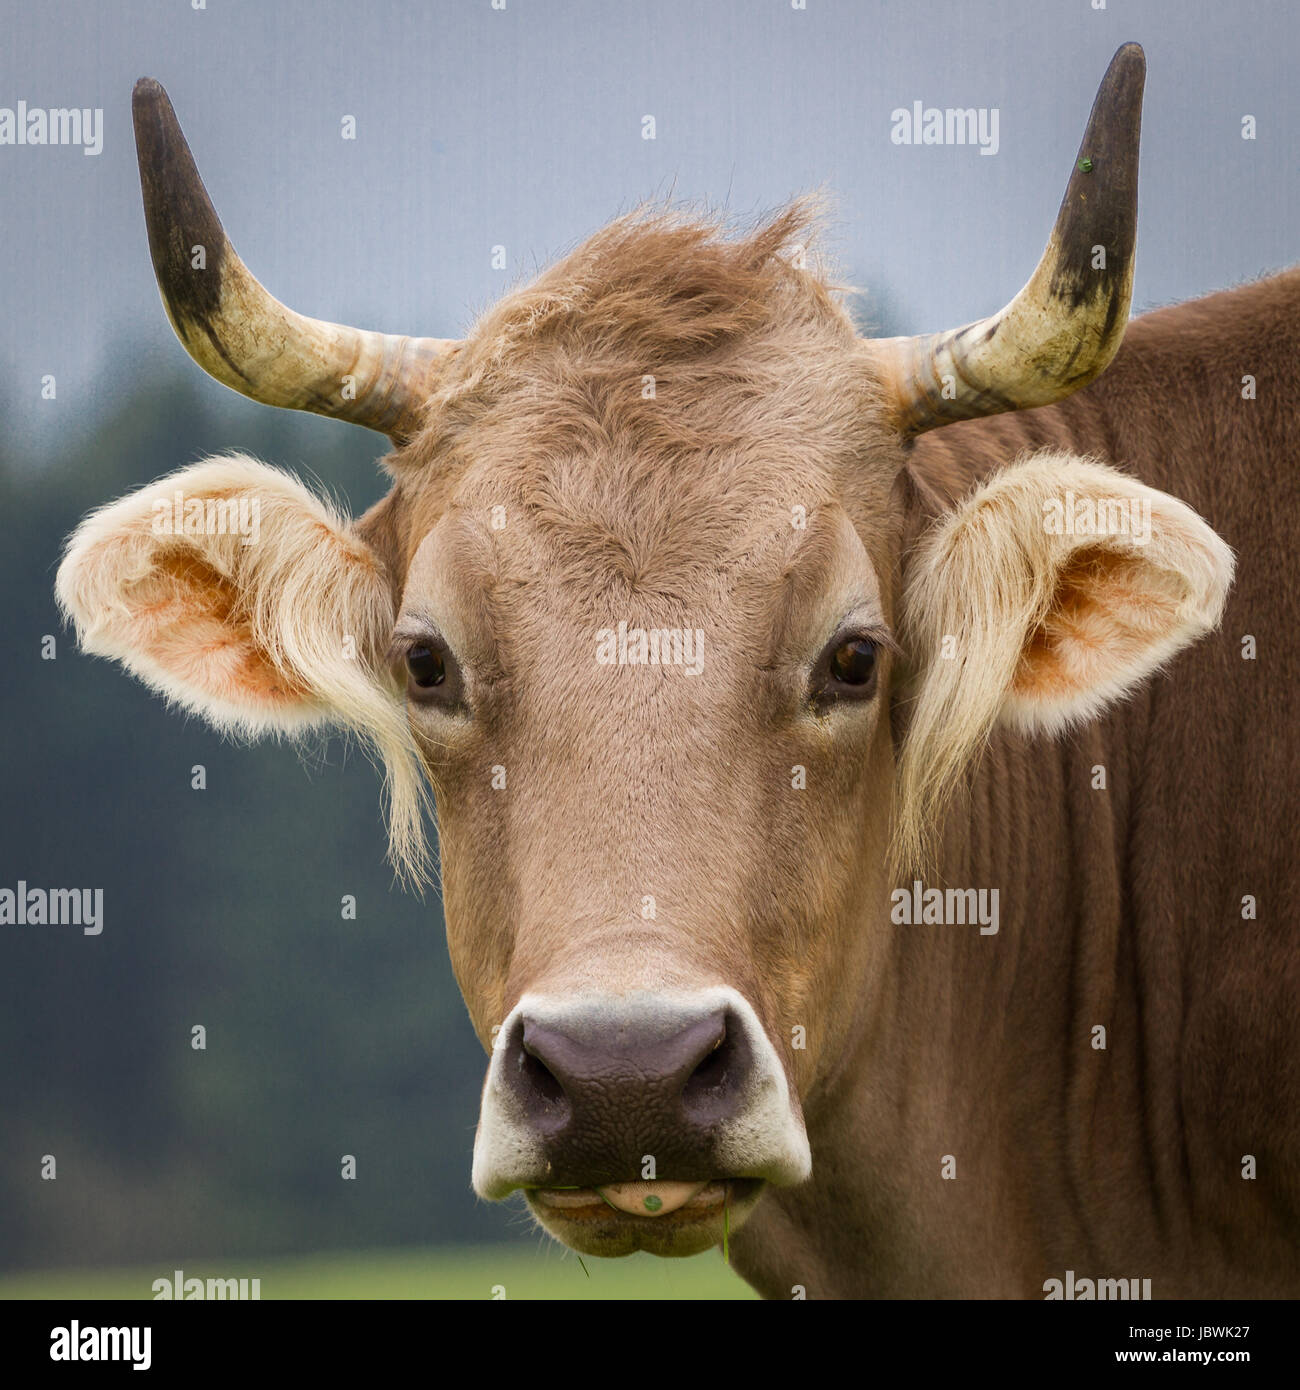 Wirklich eine hübsche braune Kuh schaut mit aufgerichteten Ohren direkt in die Kamera. Banque D'Images